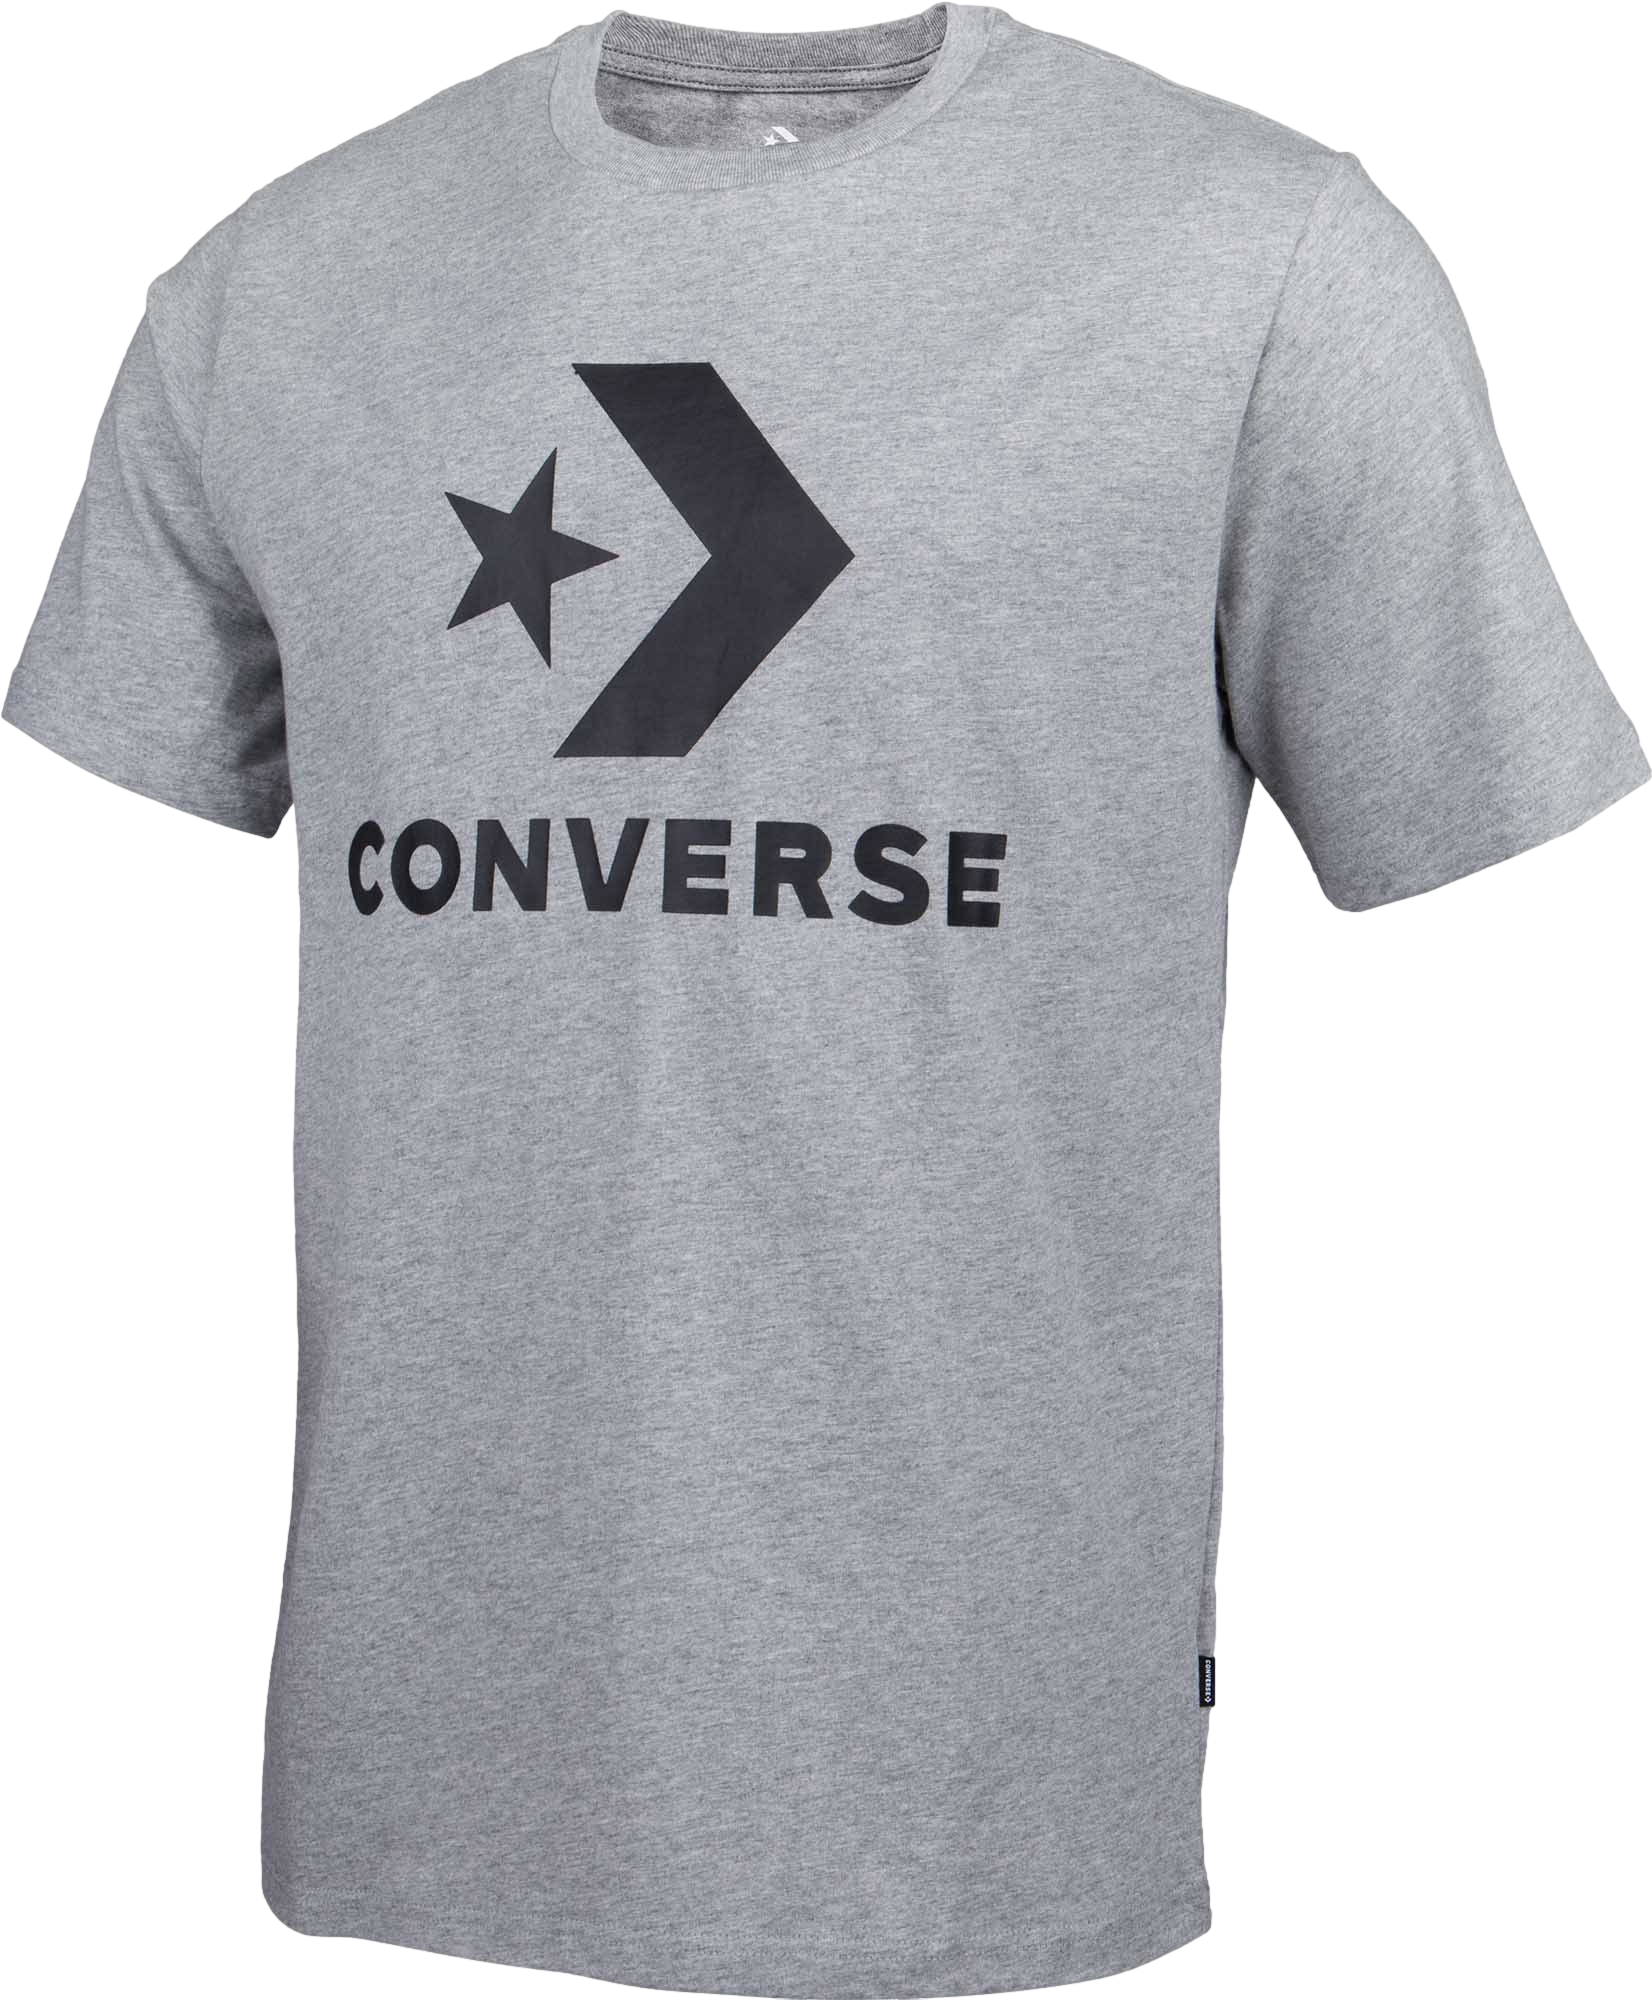 חולצת T קונברס לגברים Converse 10018568-A03 - אפור